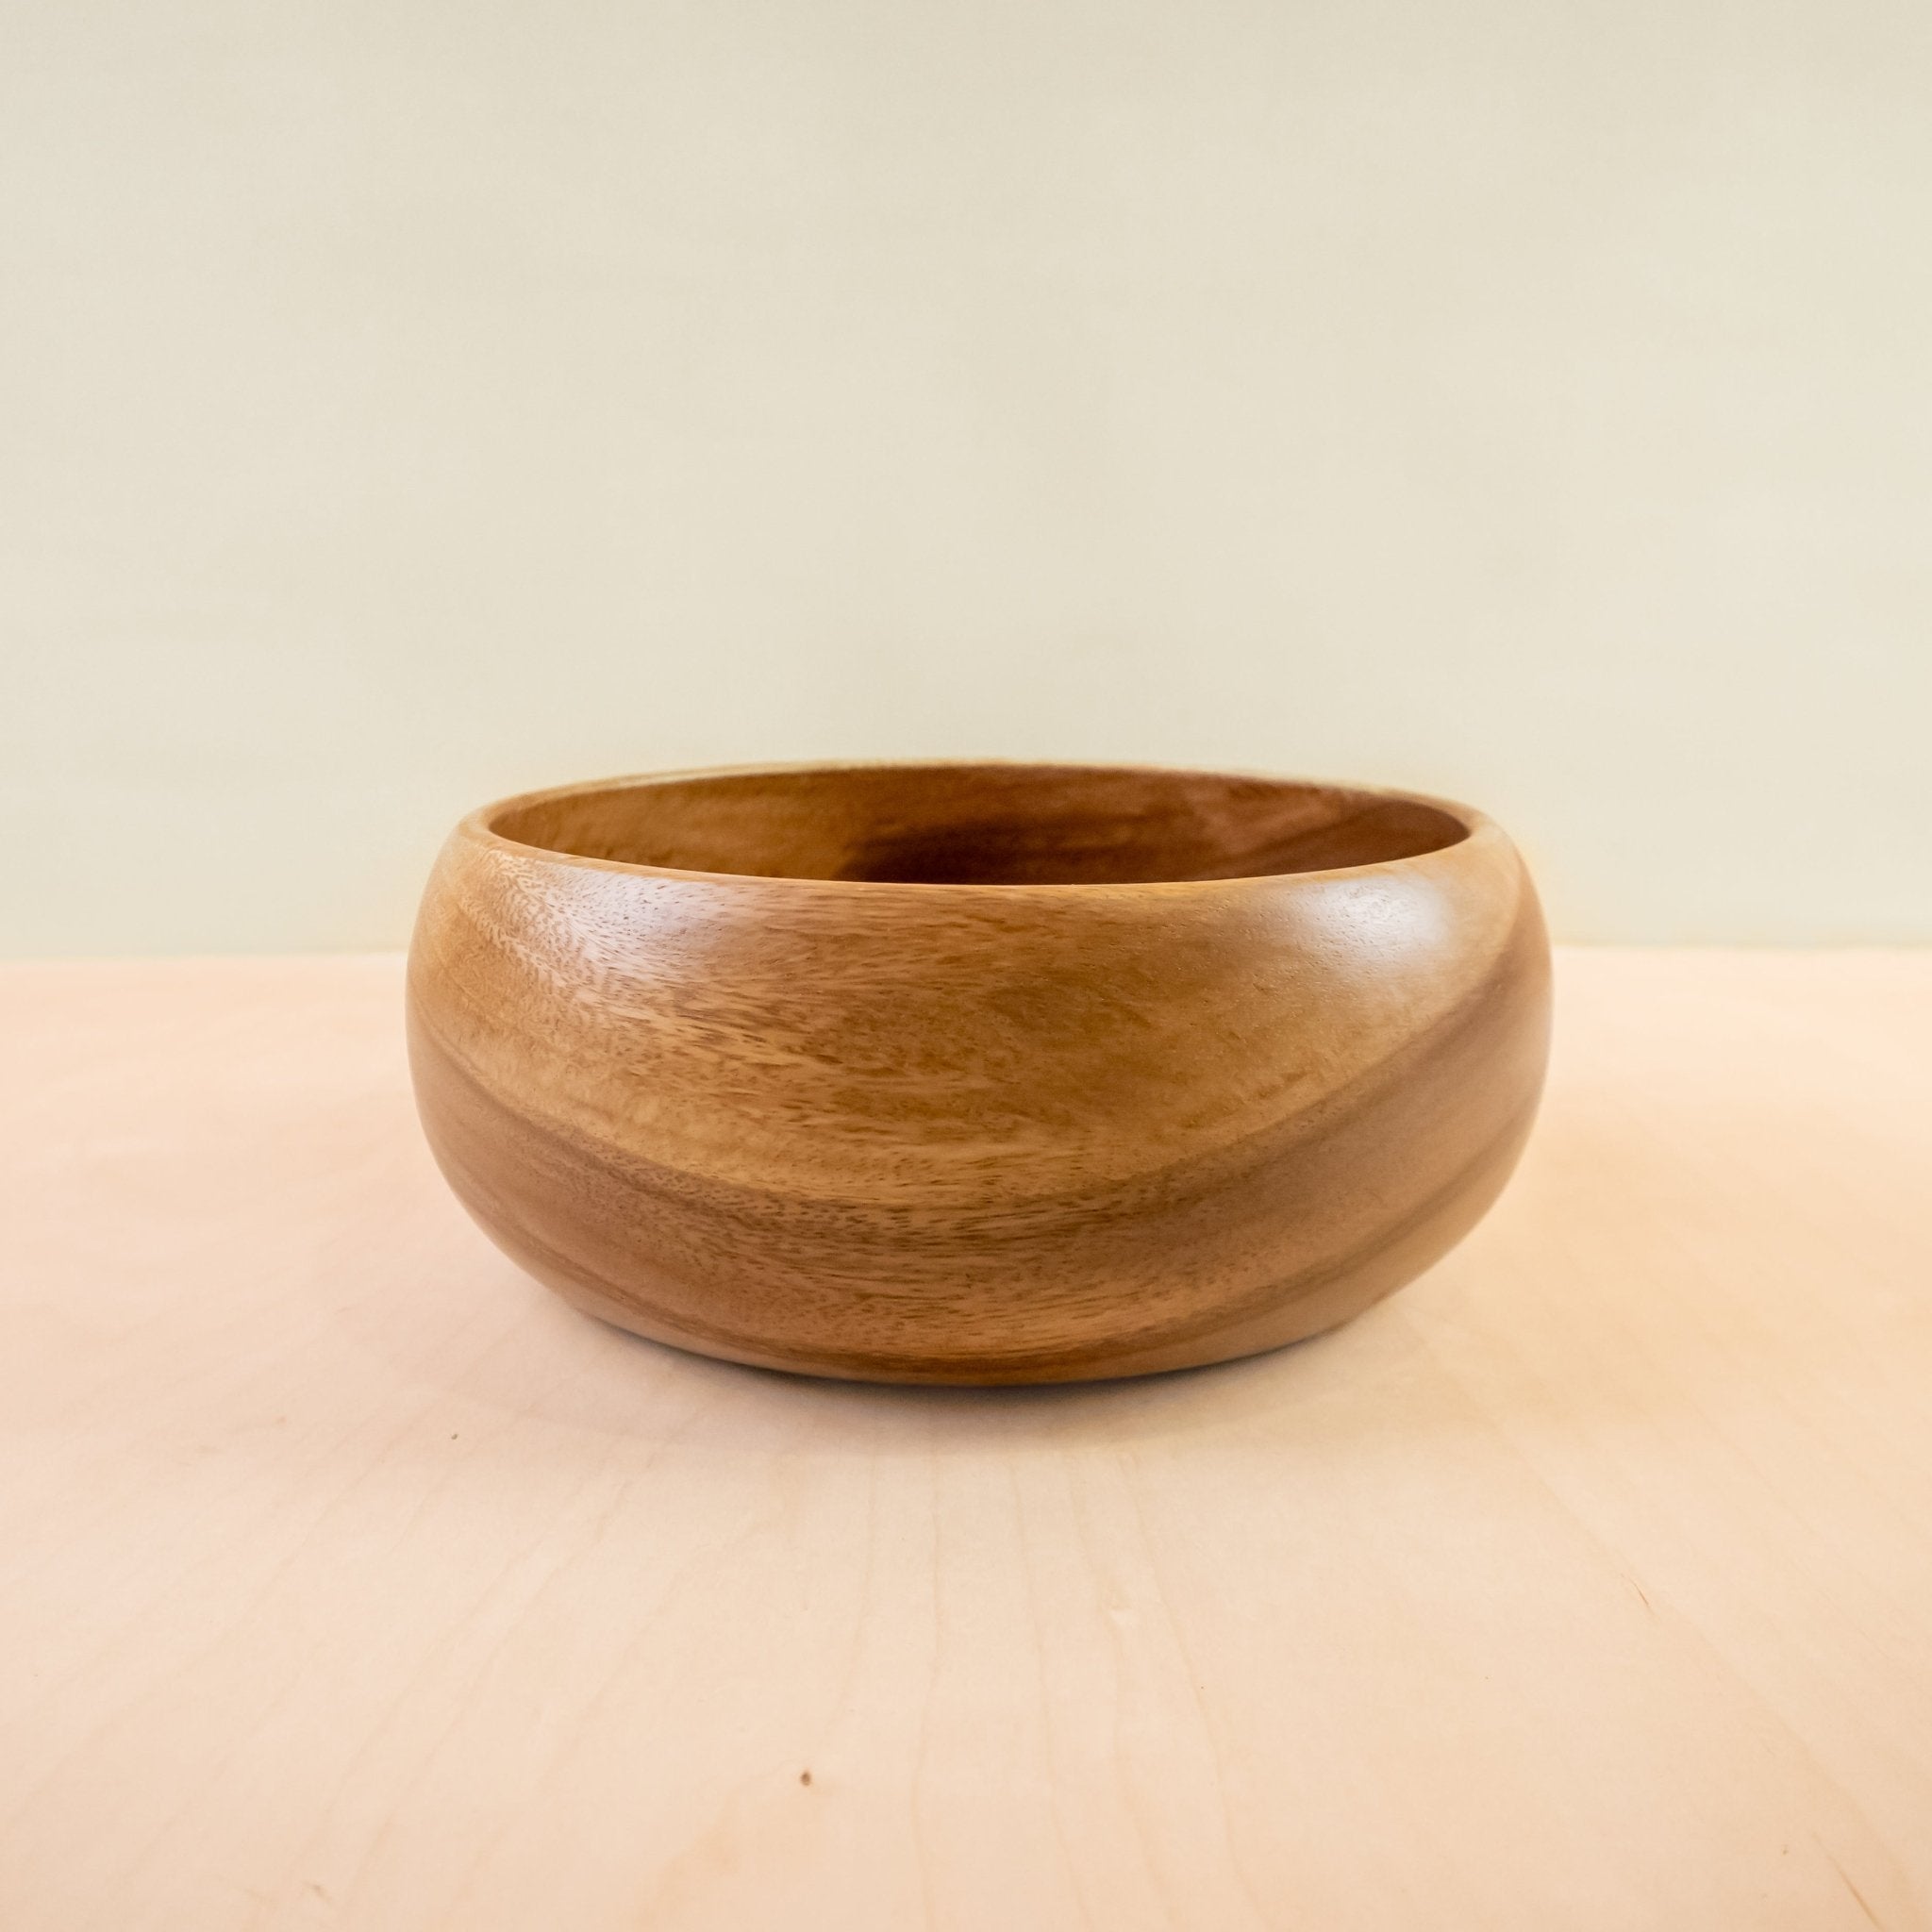 Acacia Calabash Bowls, set of 1 large + 4 small bowls | LIKH?